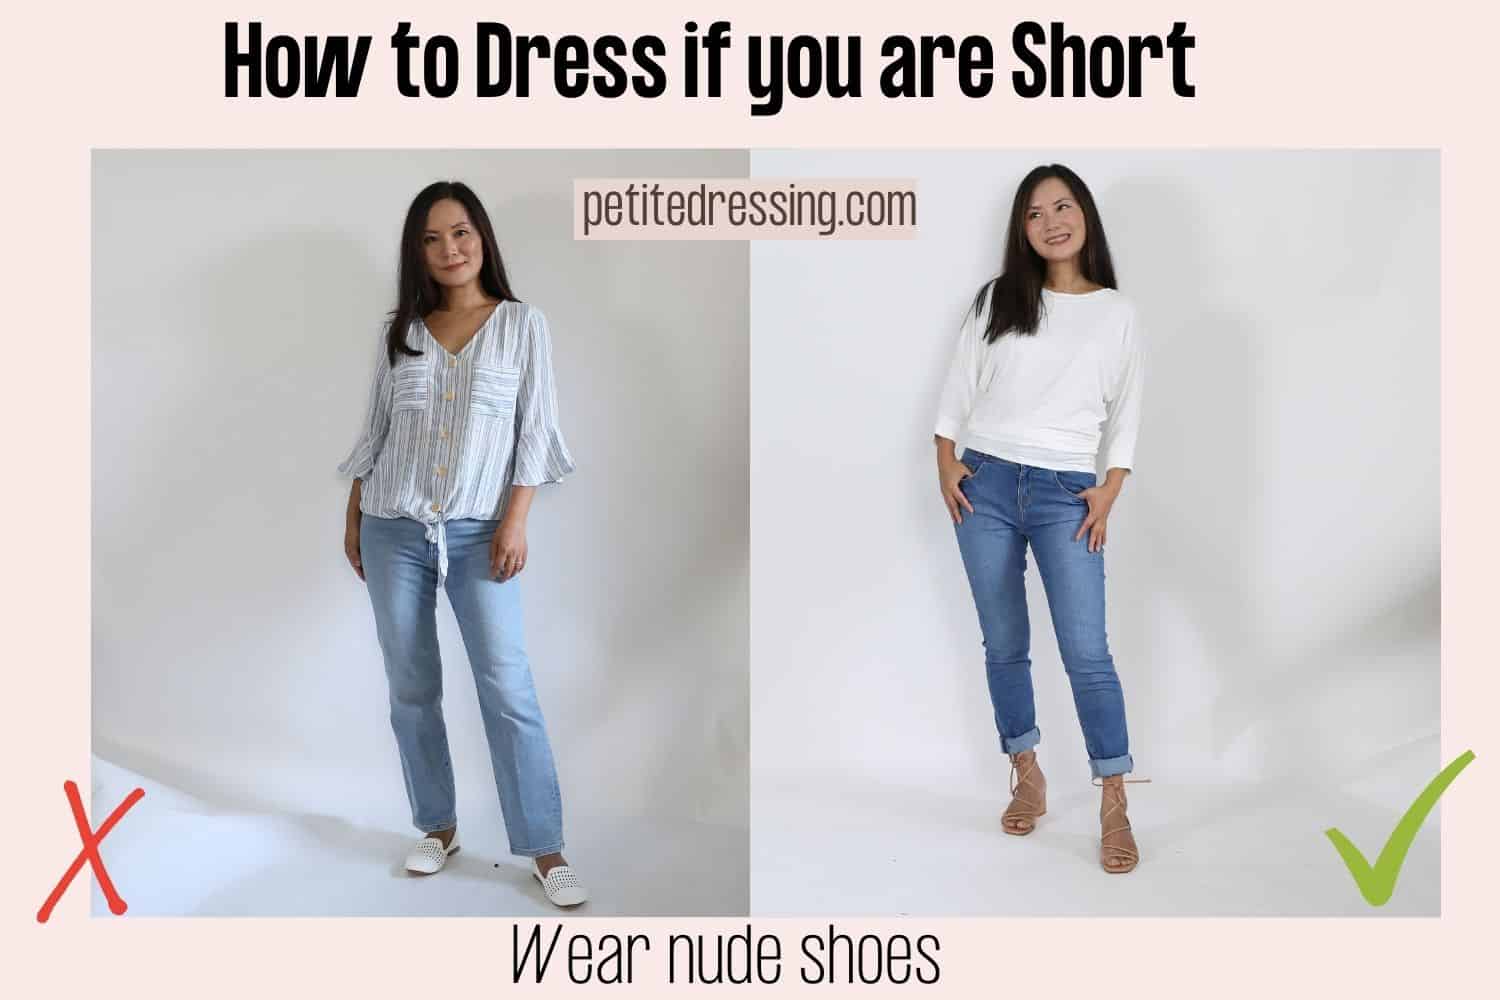 Afskrække Vedligeholdelse Genoptag 30 Best Ways to Dress if you are Short (Comprehensive guide)